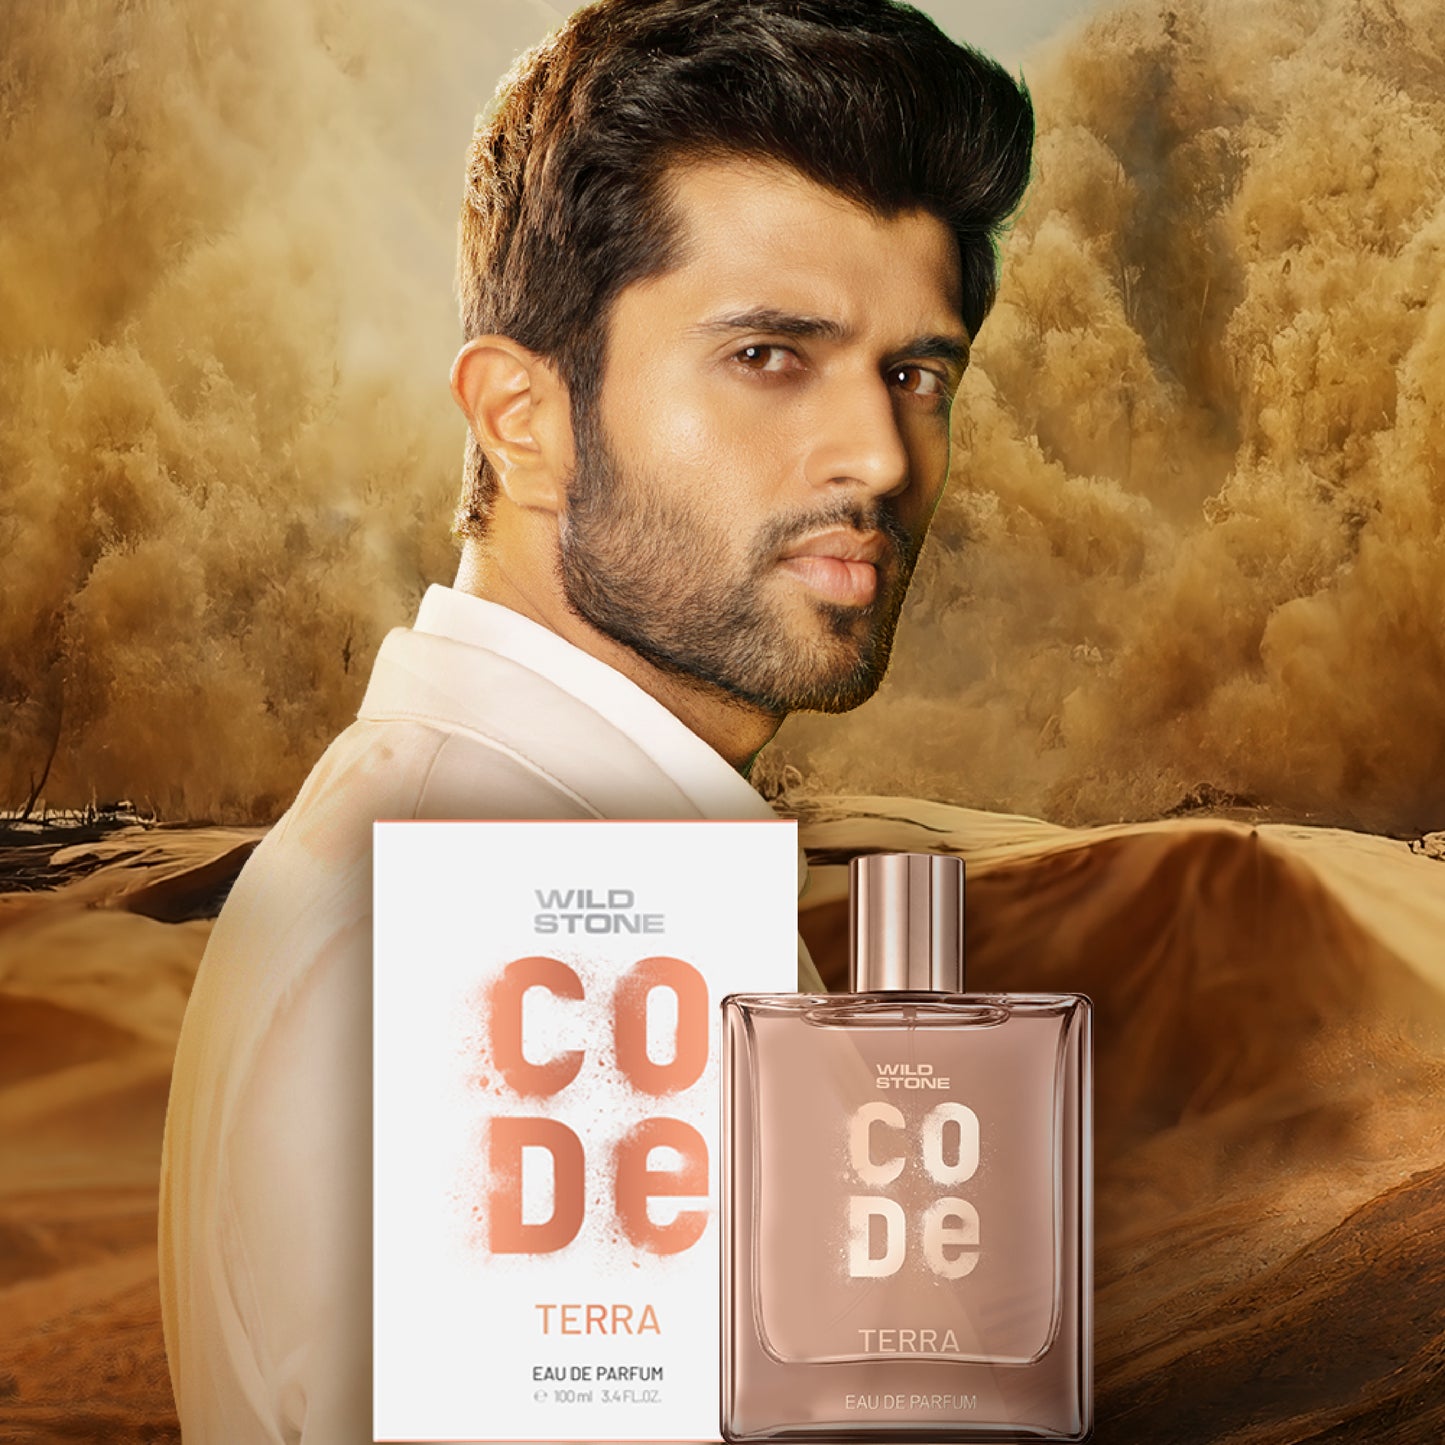 CODE Terra Luxury Perfume and Hair Serum Combo